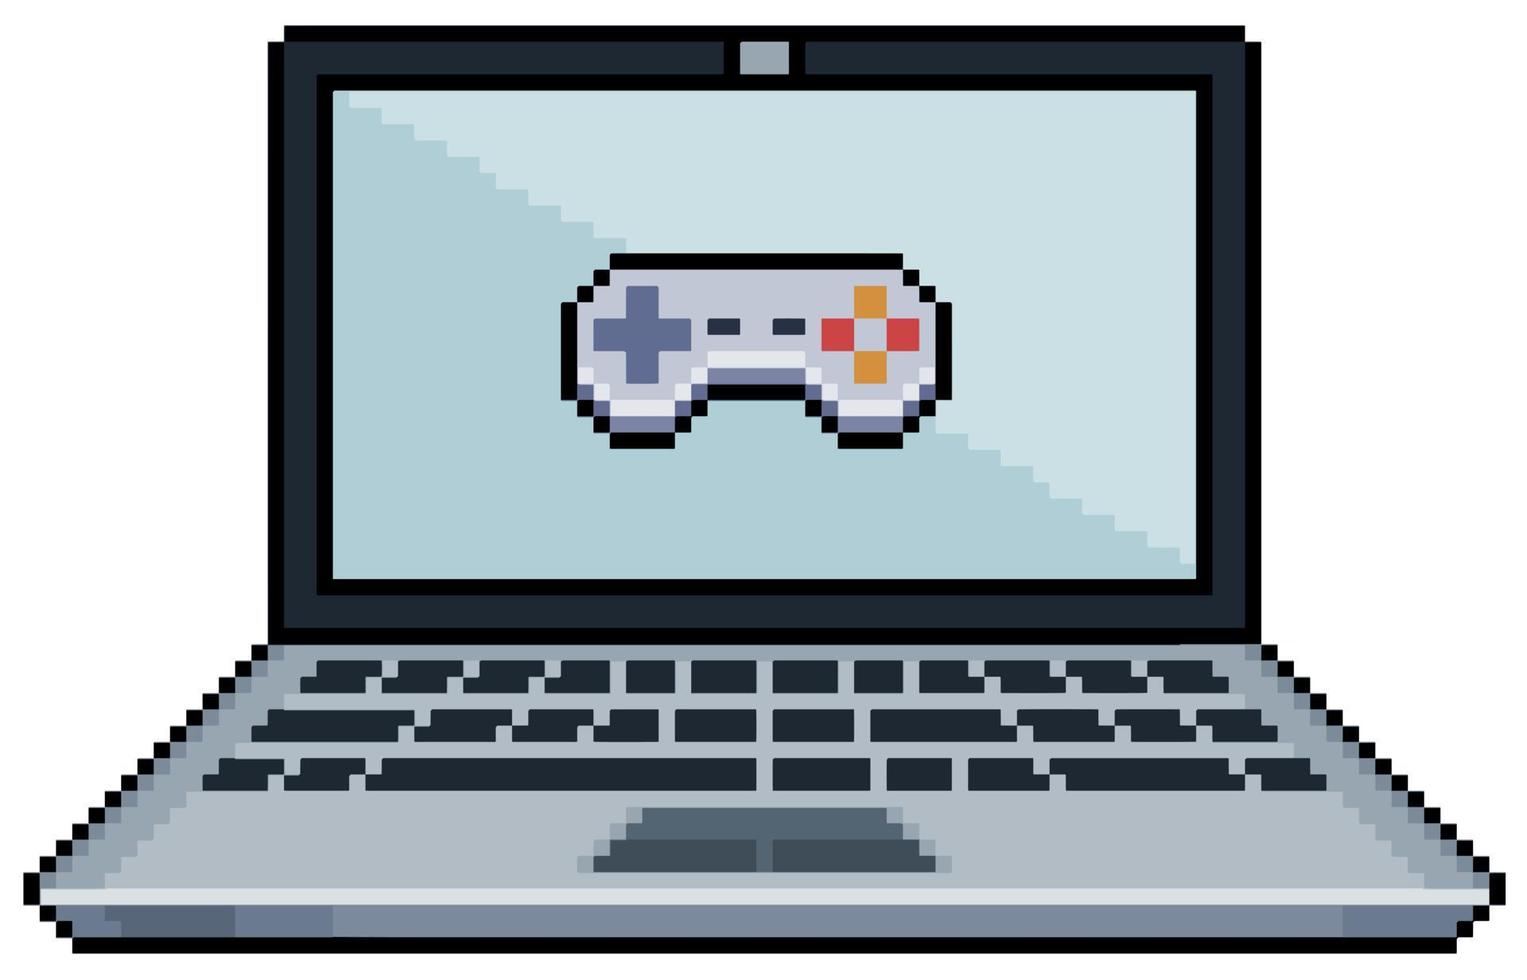 ordinateur portable pixel art avec icône de joystick de jeu vidéo sur l'icône de vecteur d'écran pour le jeu 8bit sur fond blanc